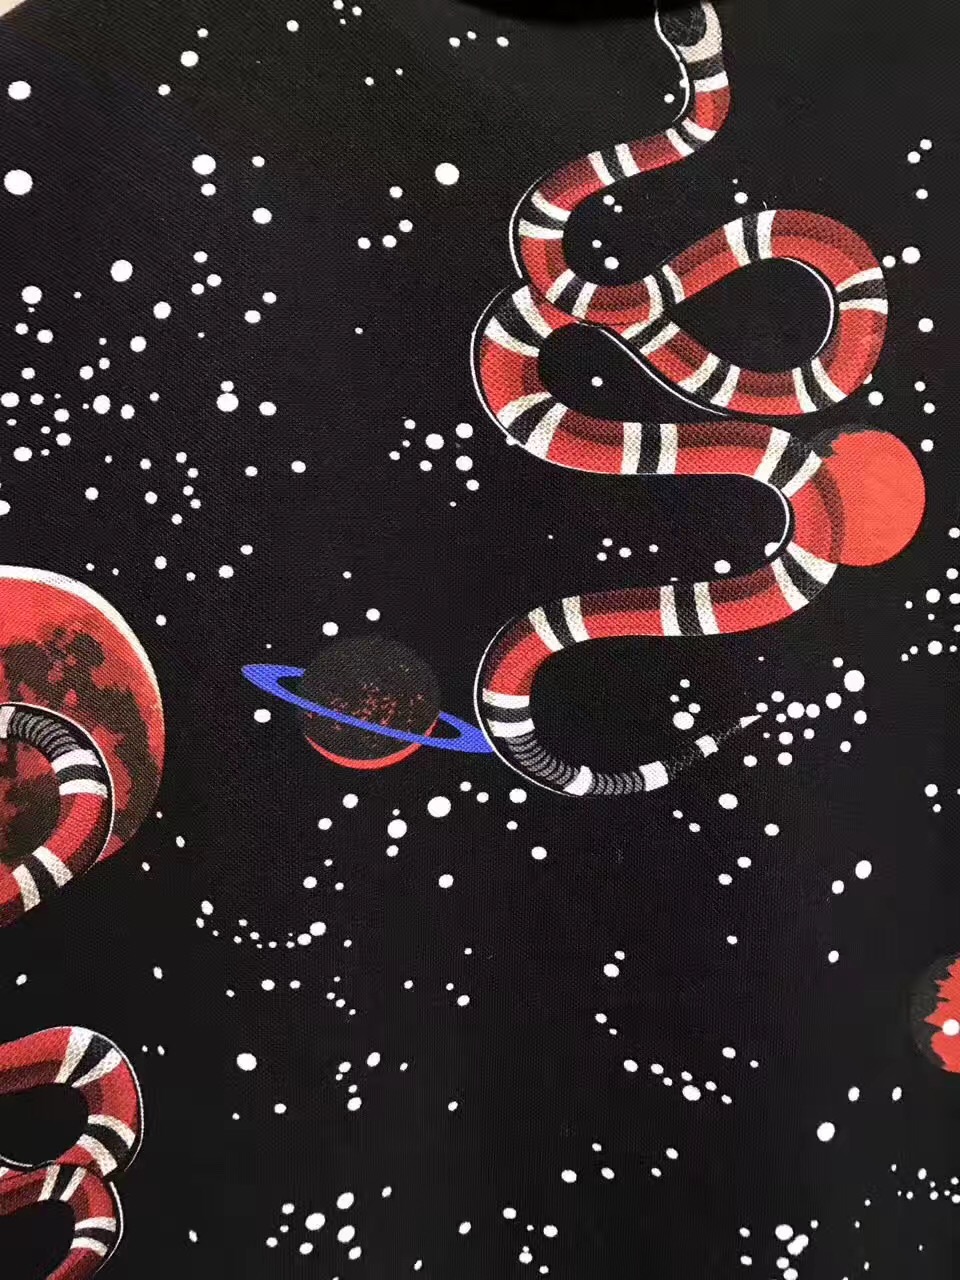 96+] Gucci Snake Wallpaper WallpaperSafari